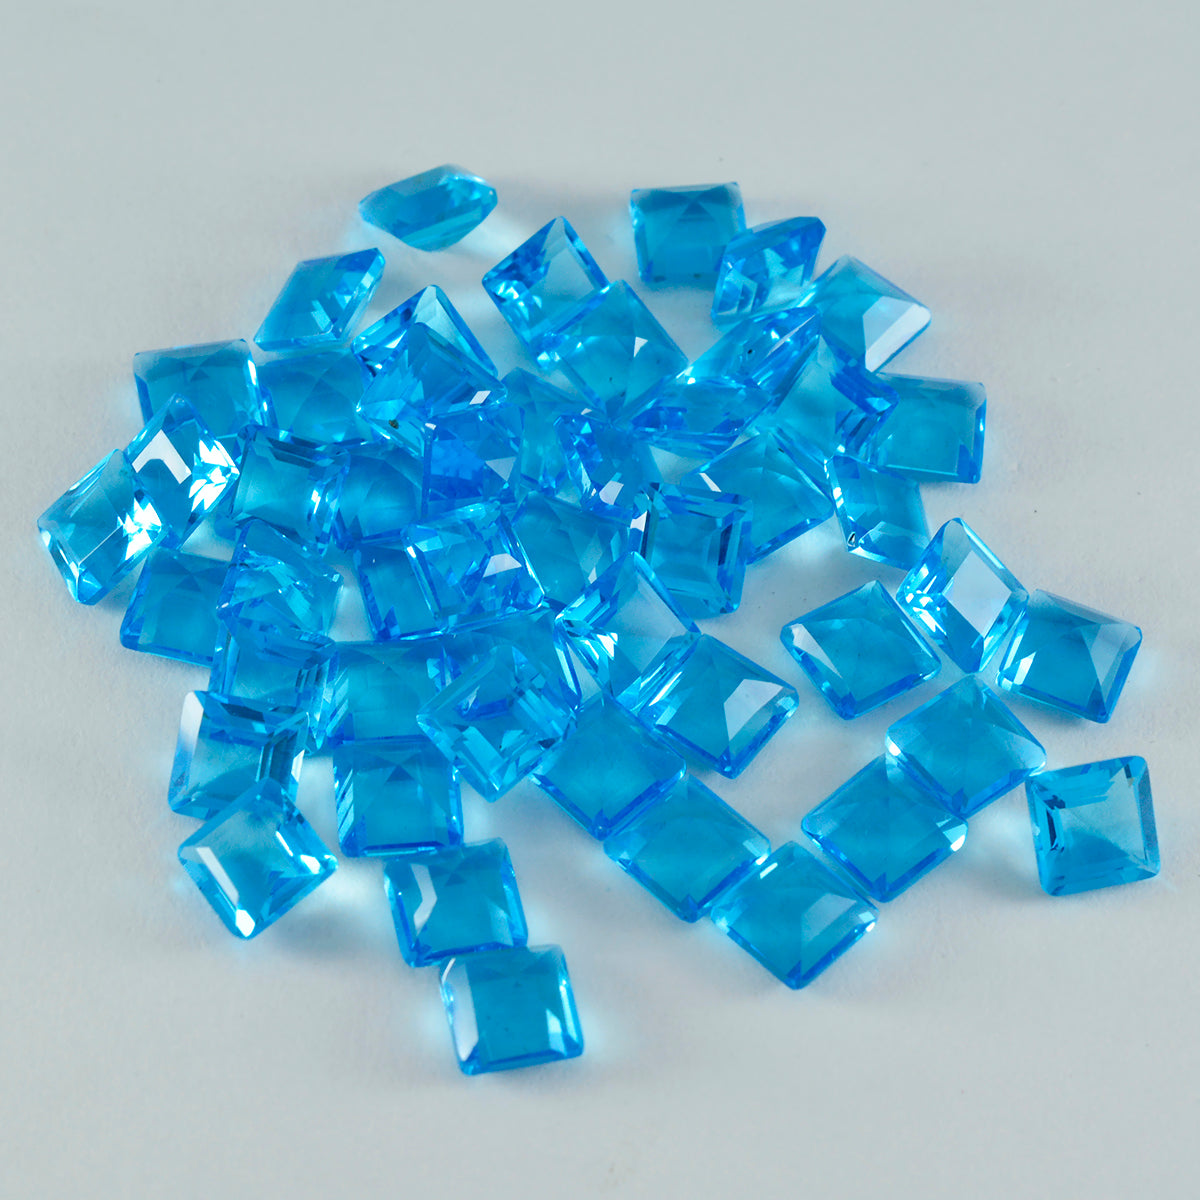 Riyogems 1PC Blue Topaz CZ gefacetteerd 6x6 mm vierkante vorm aantrekkelijke kwaliteitsedelstenen